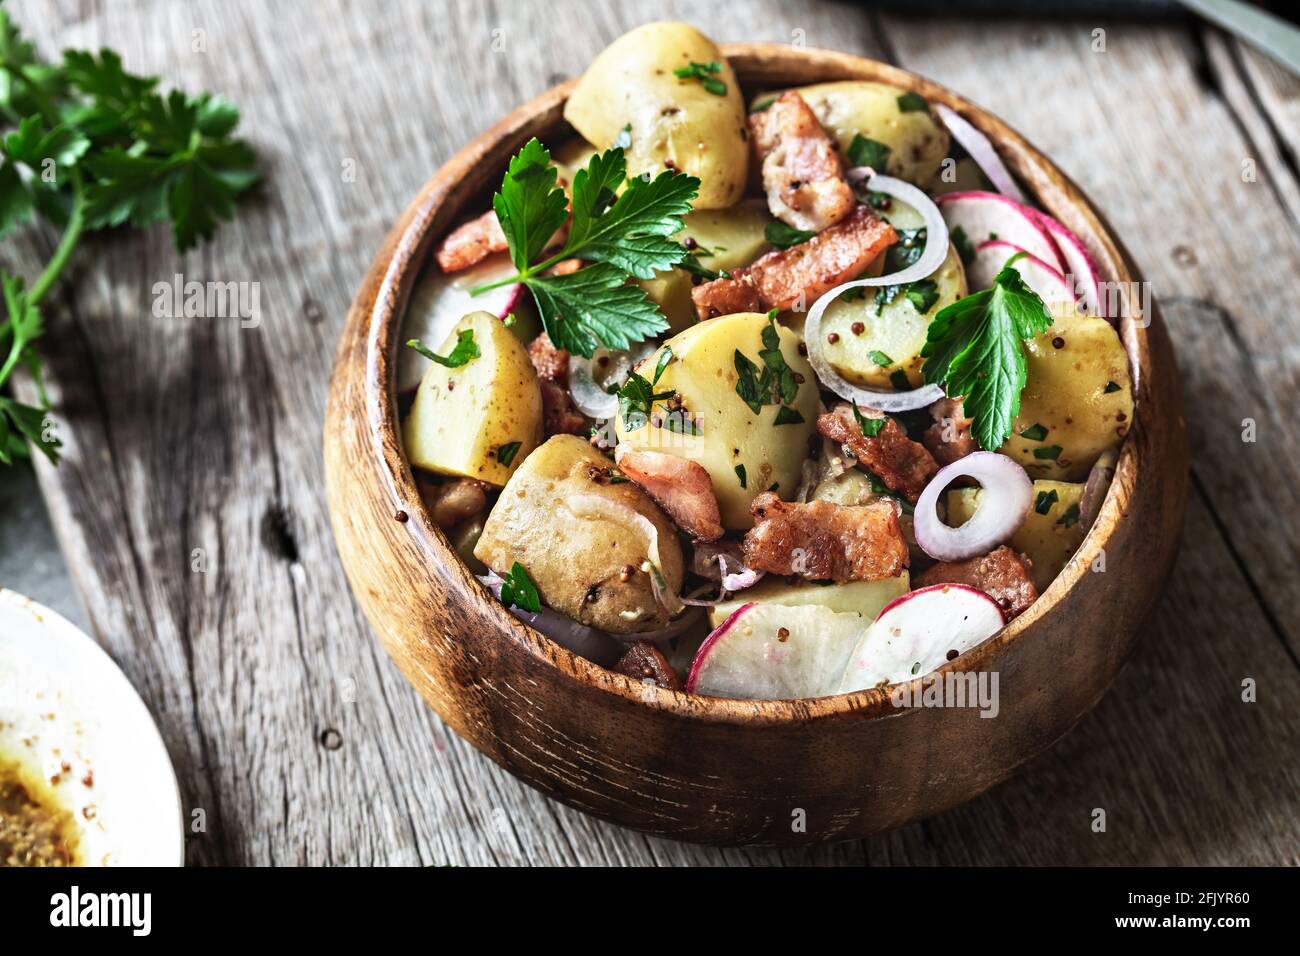 Pomme de terre au bacon, salade de radis dans un bol en bois Banque D'Images